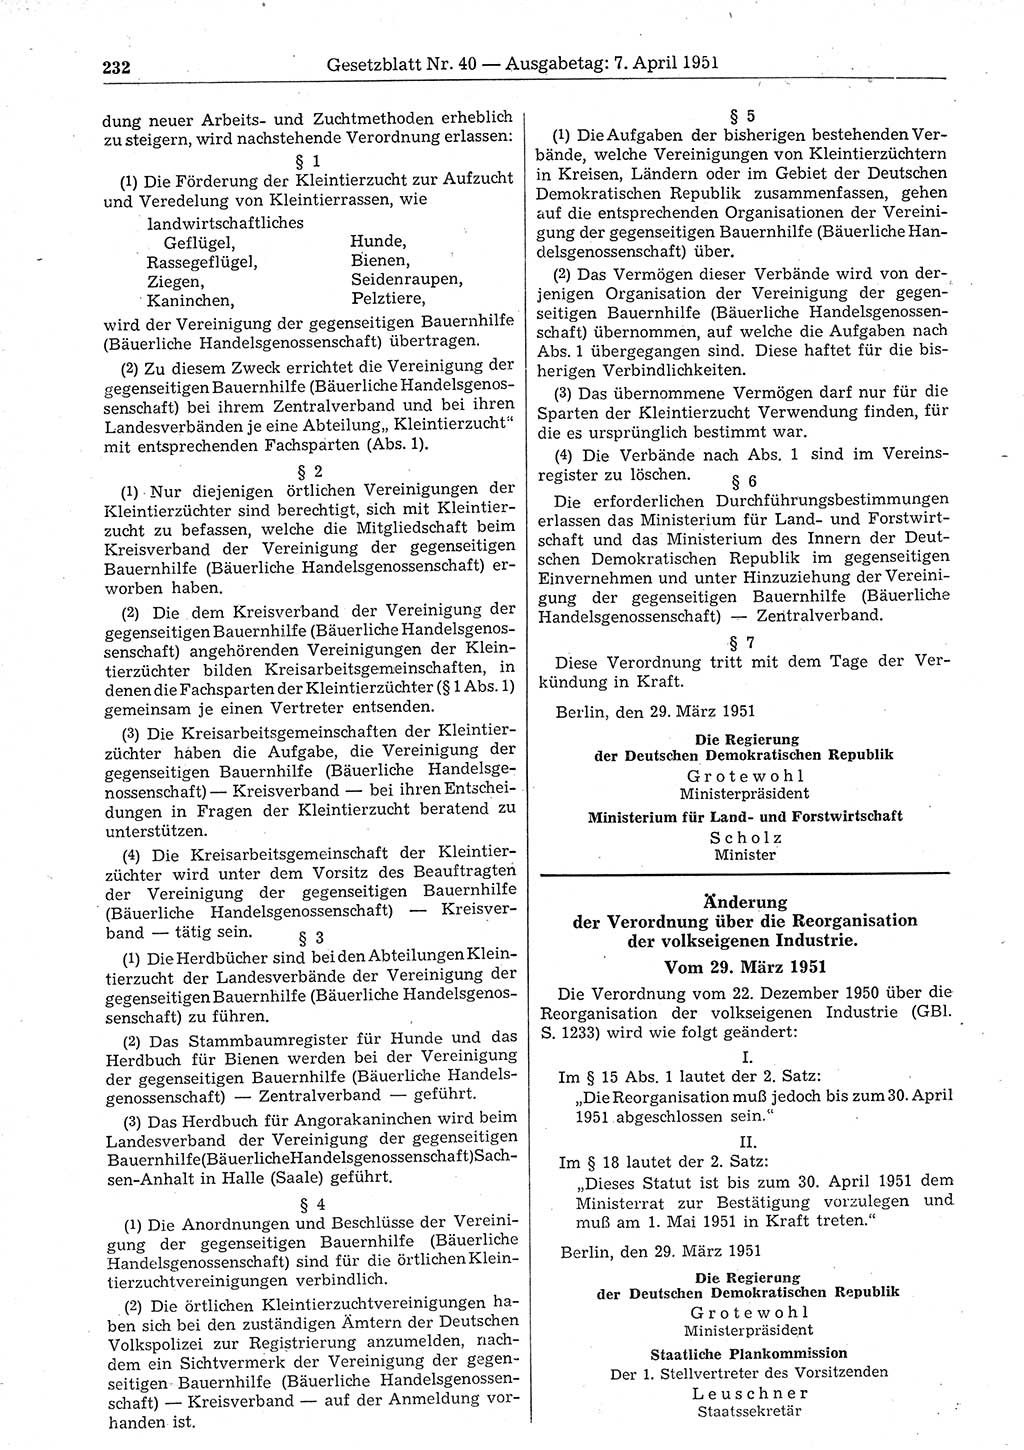 Gesetzblatt (GBl.) der Deutschen Demokratischen Republik (DDR) 1951, Seite 232 (GBl. DDR 1951, S. 232)